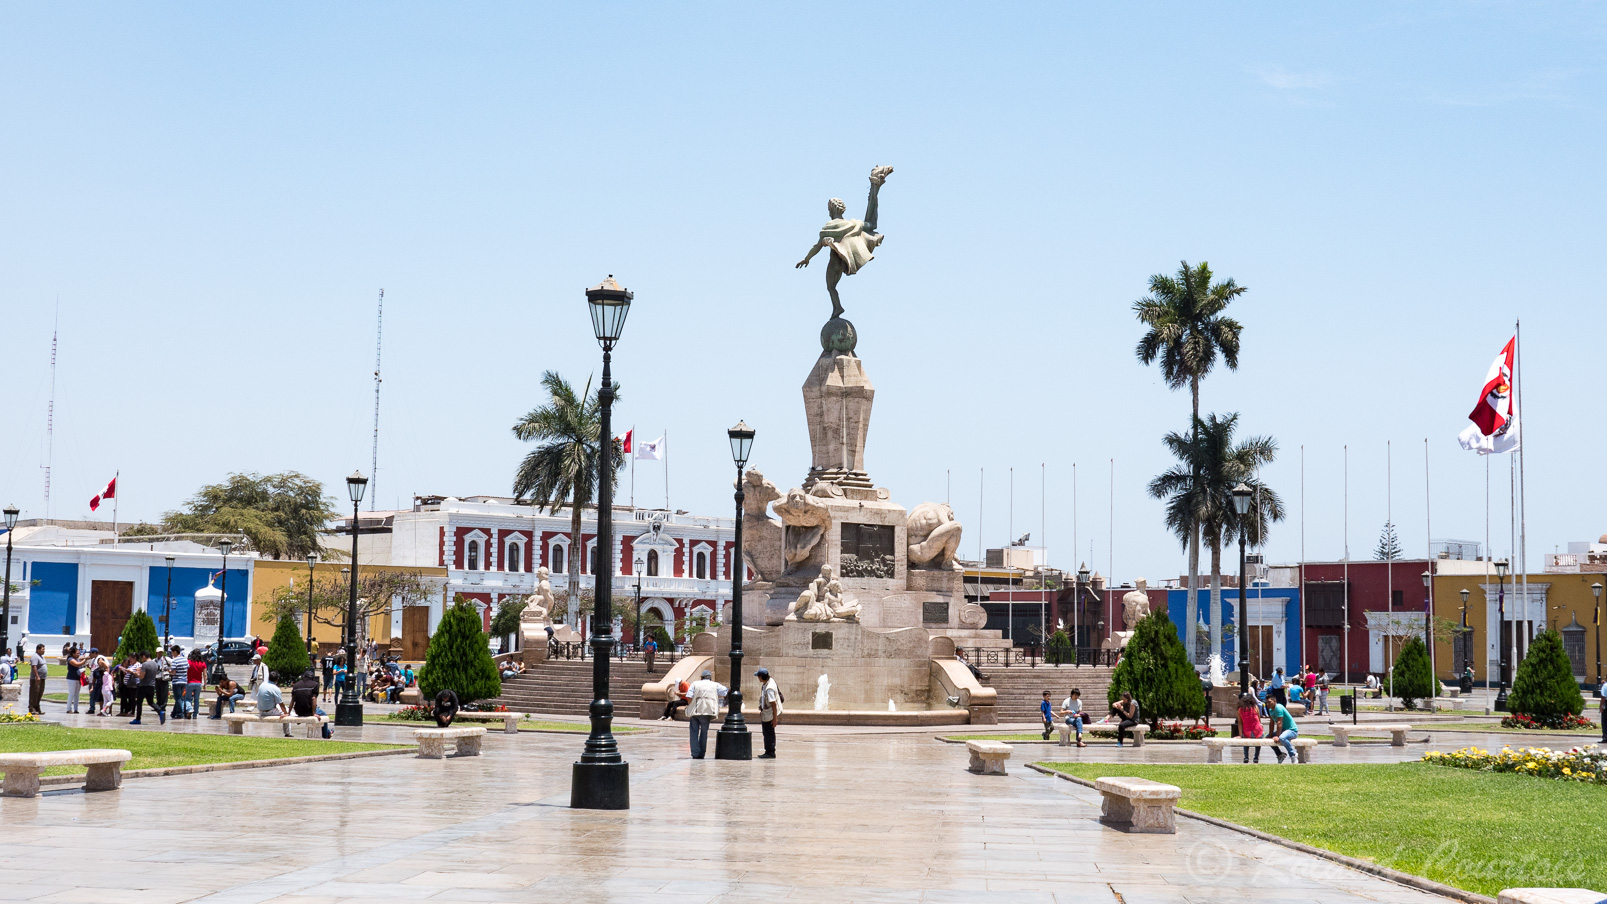 Place d'armes de Trujillo. Au centre de la place, on peut admirer le monument de la Liberté, étrange statue baroque de marbre.